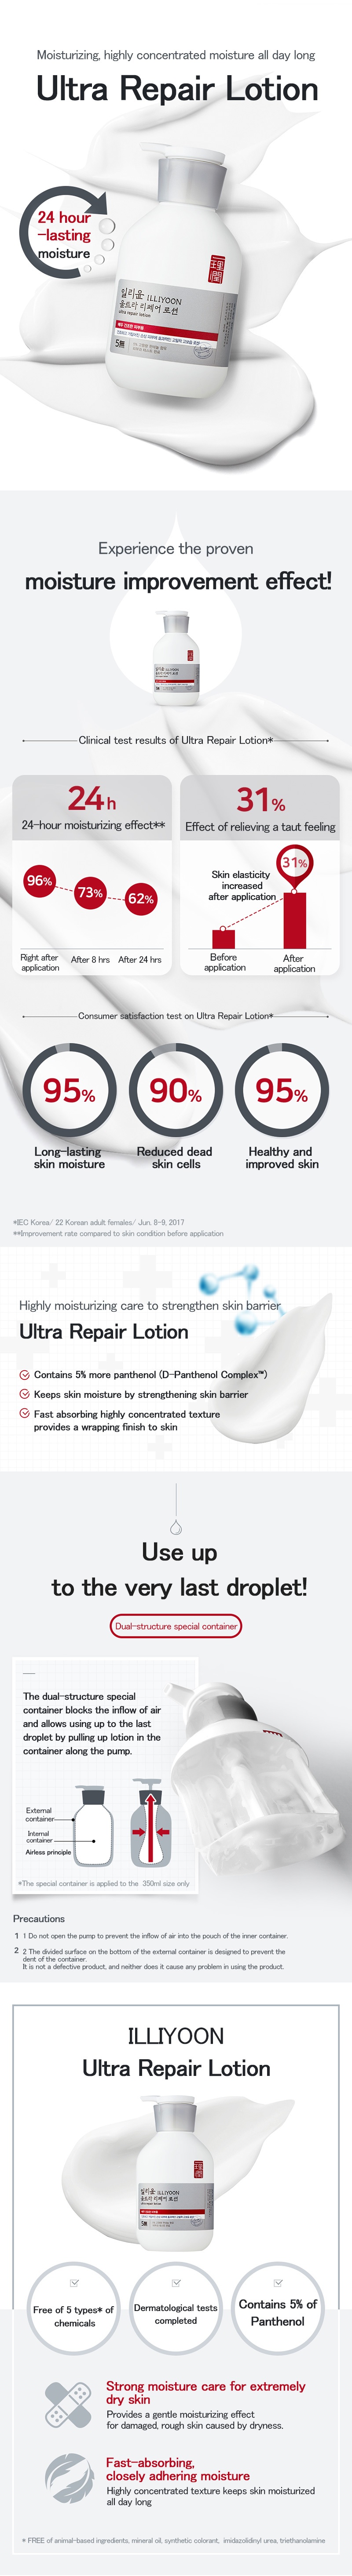 ILLIYOON Ultra Repair Lotion prodotto cosmetico coreano negozio online malesia chiana usa1